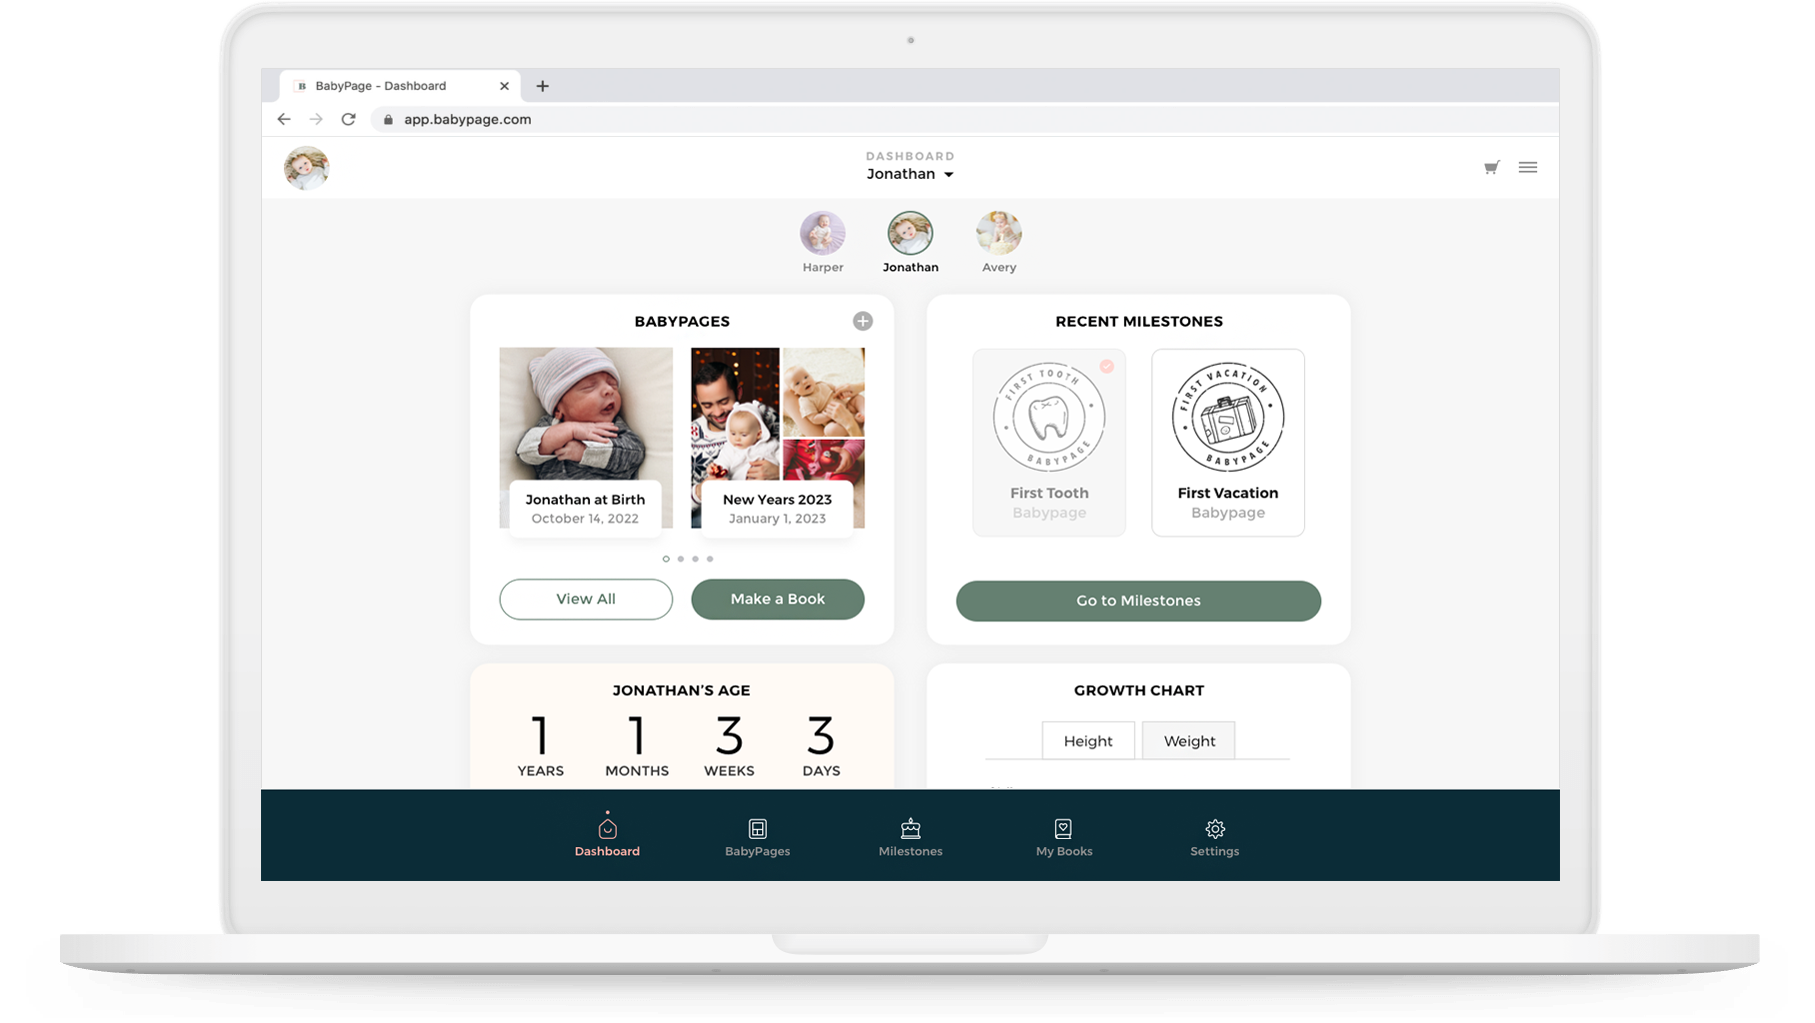 BabyPage desktop application